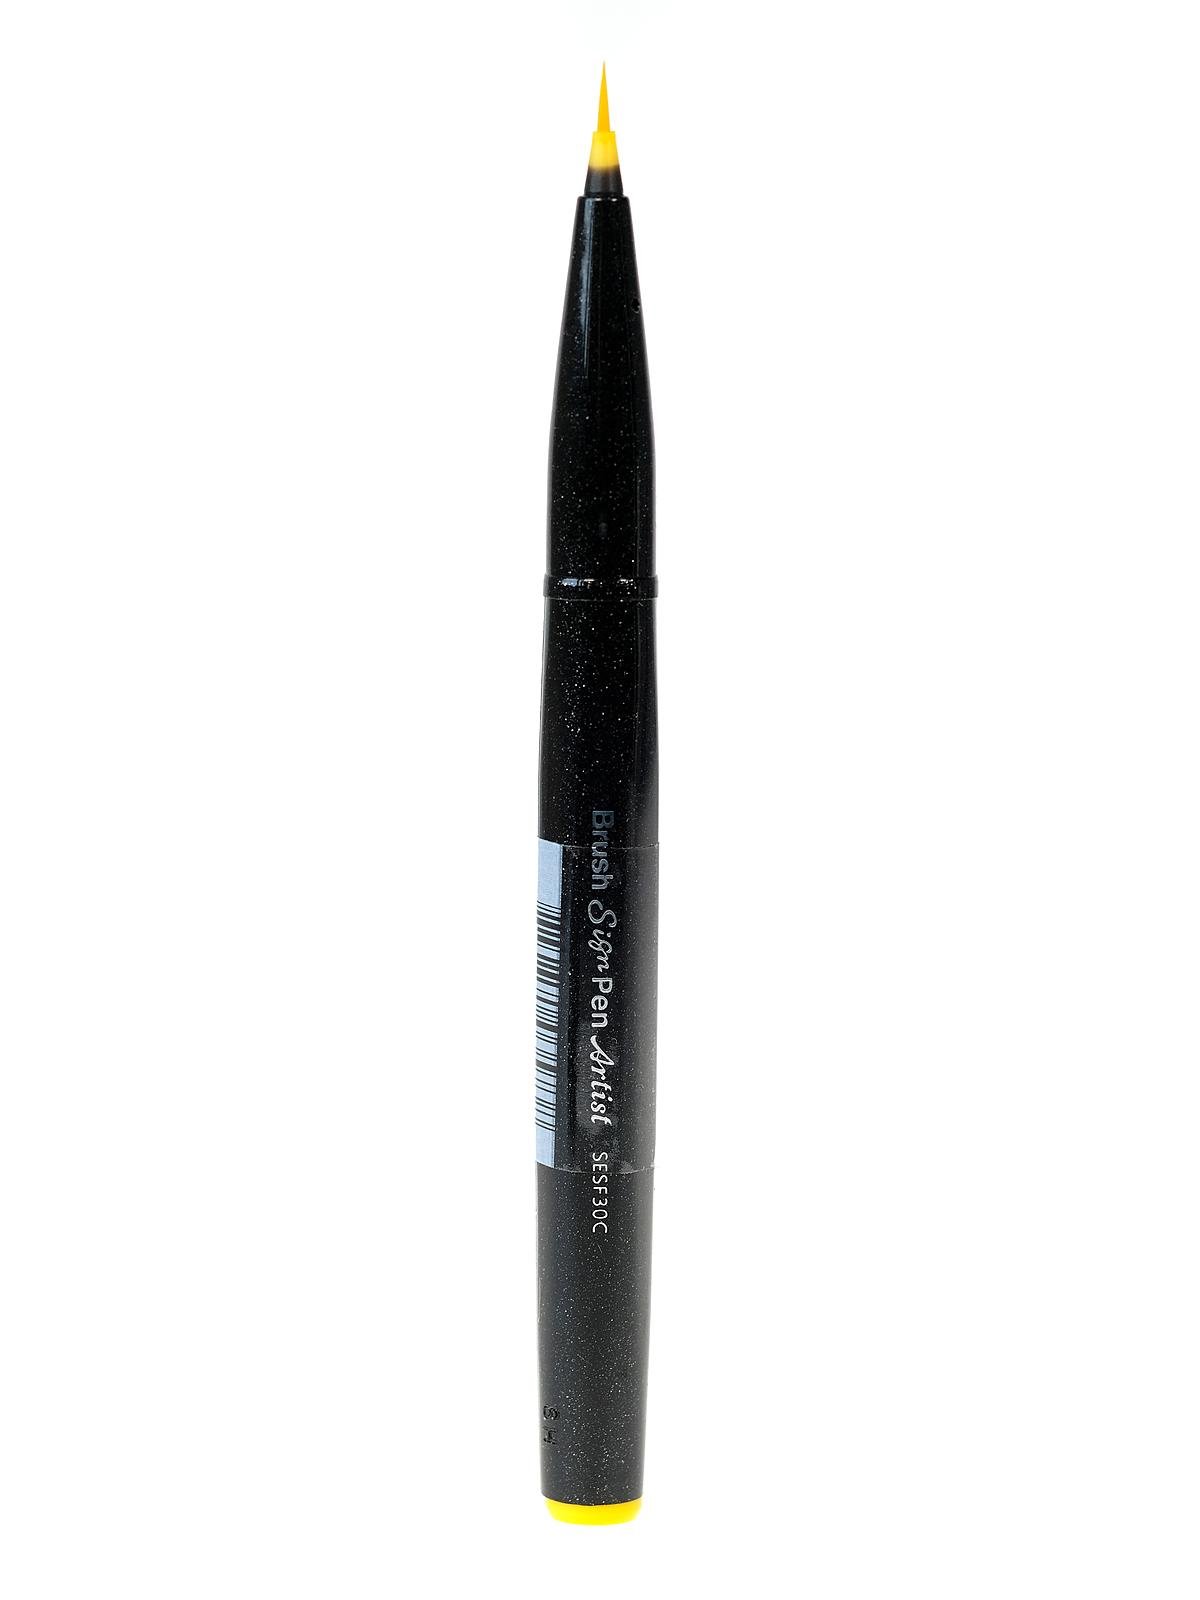 Pentel Artist Sign Pen - Micro Brush Tip